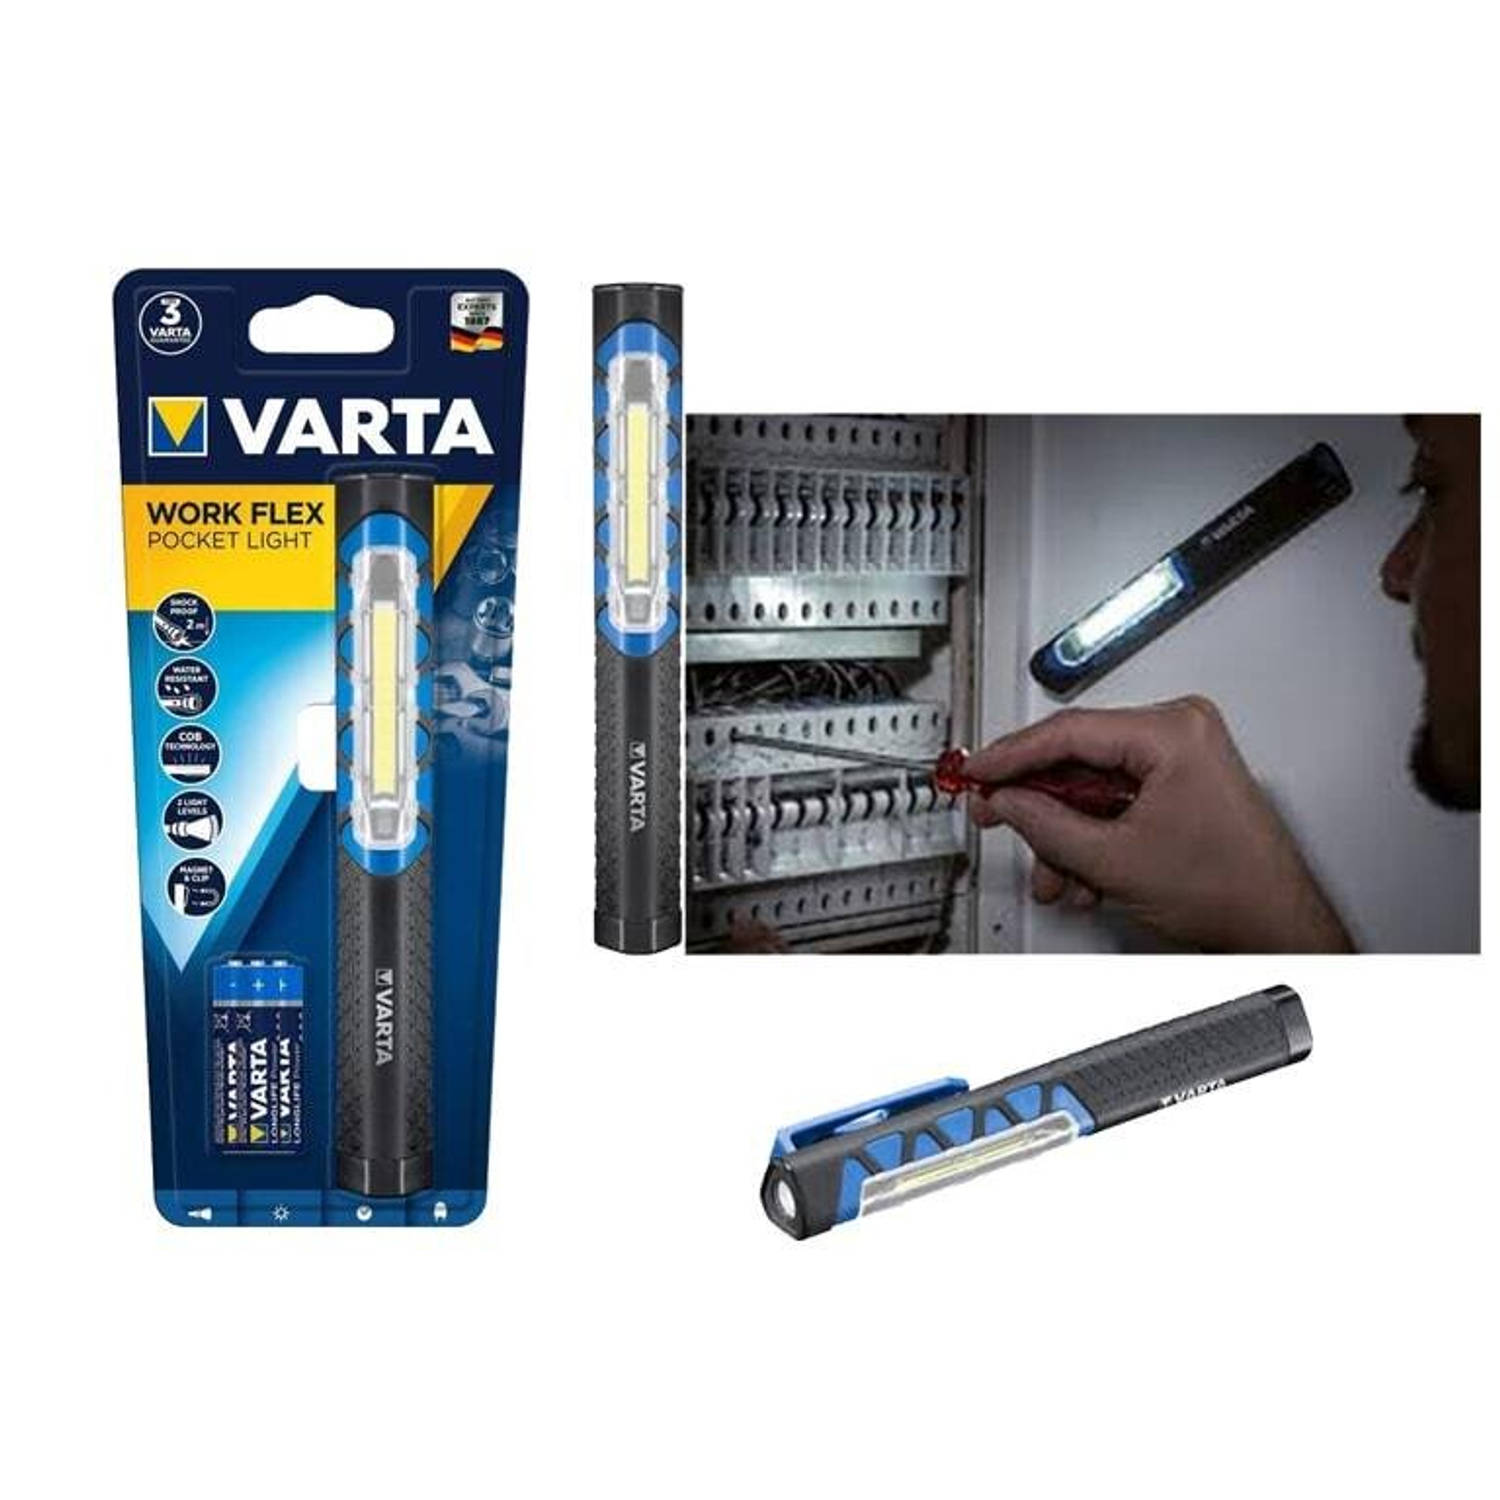 Varta Work Flex Pocket Light Lamp 17647101421